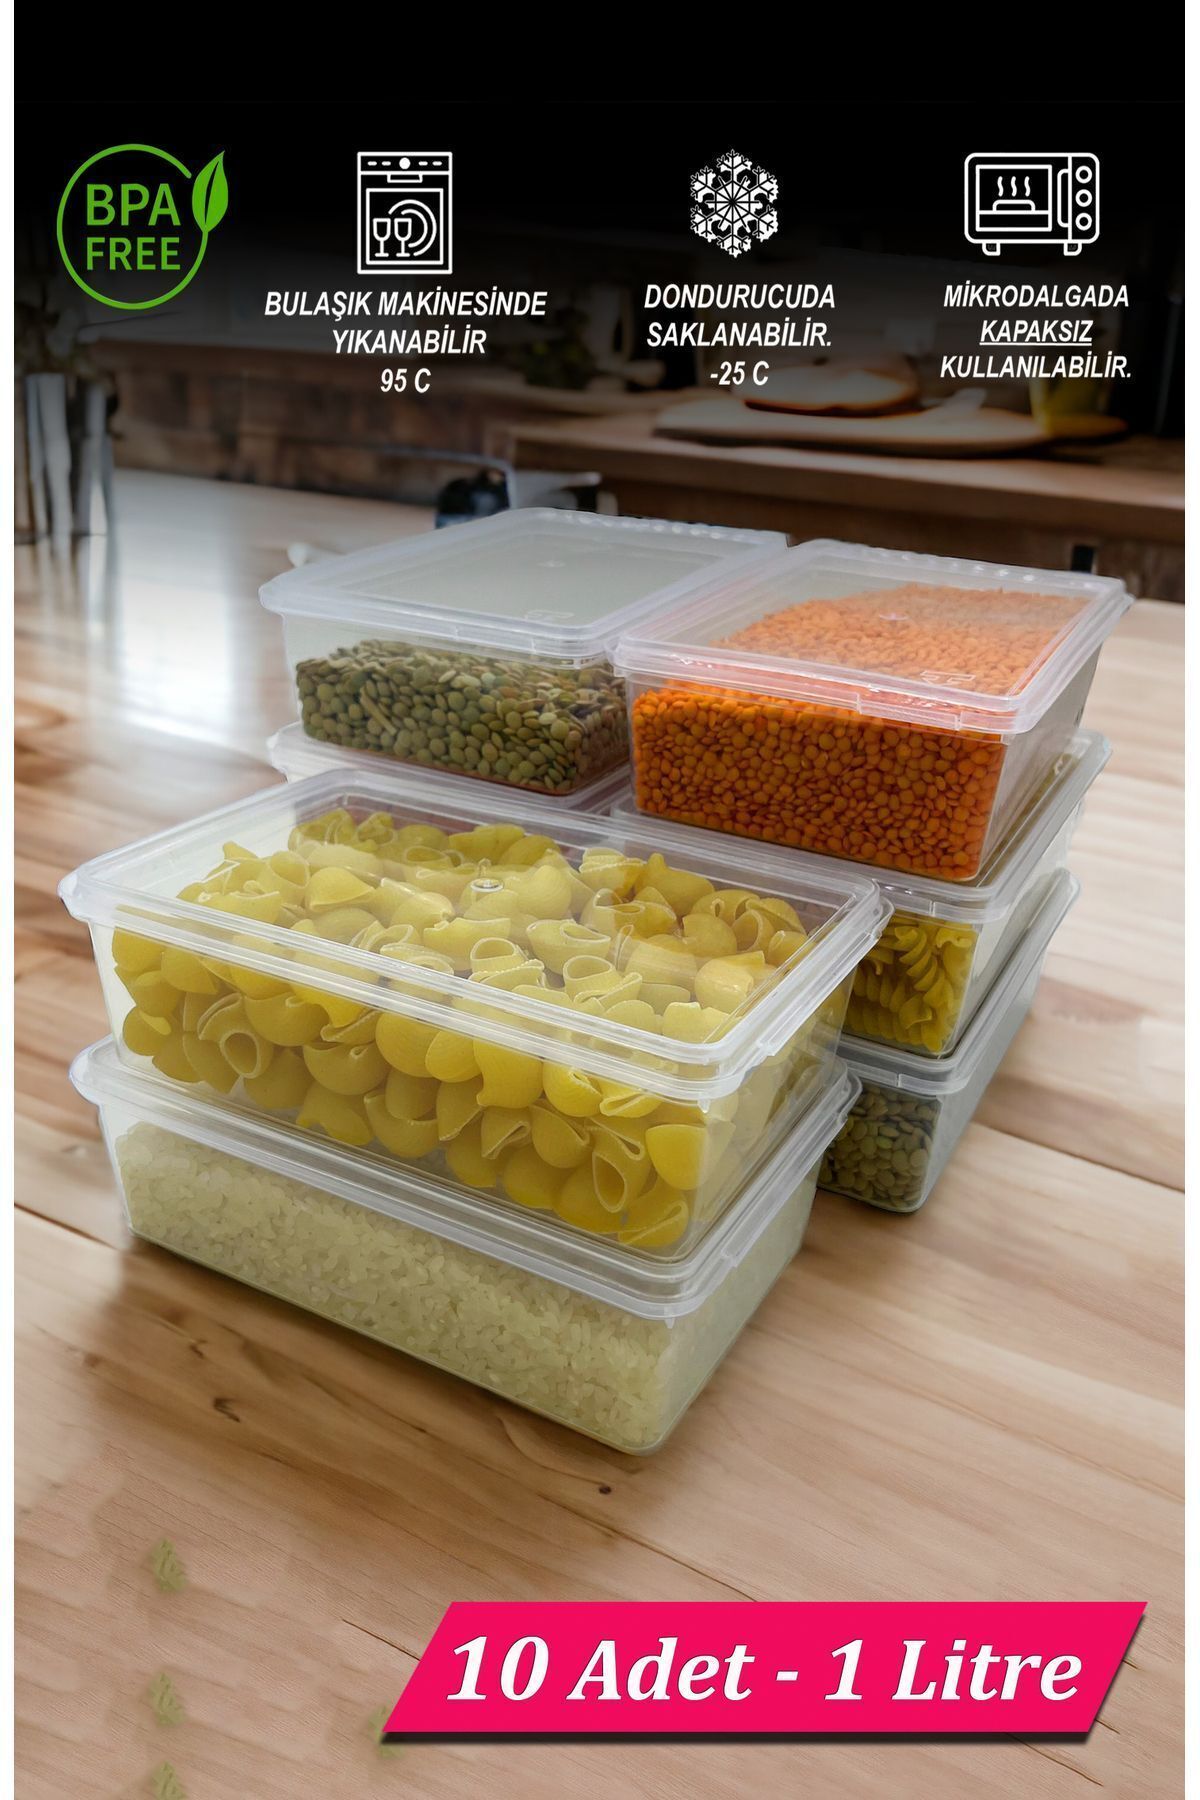 SUPERCUPP Plastik Kendinden Kilitli- Kapaklı Saklama Kabı Gıda&Yemek&Derin Dondurucu 1 Litre 10 Adet